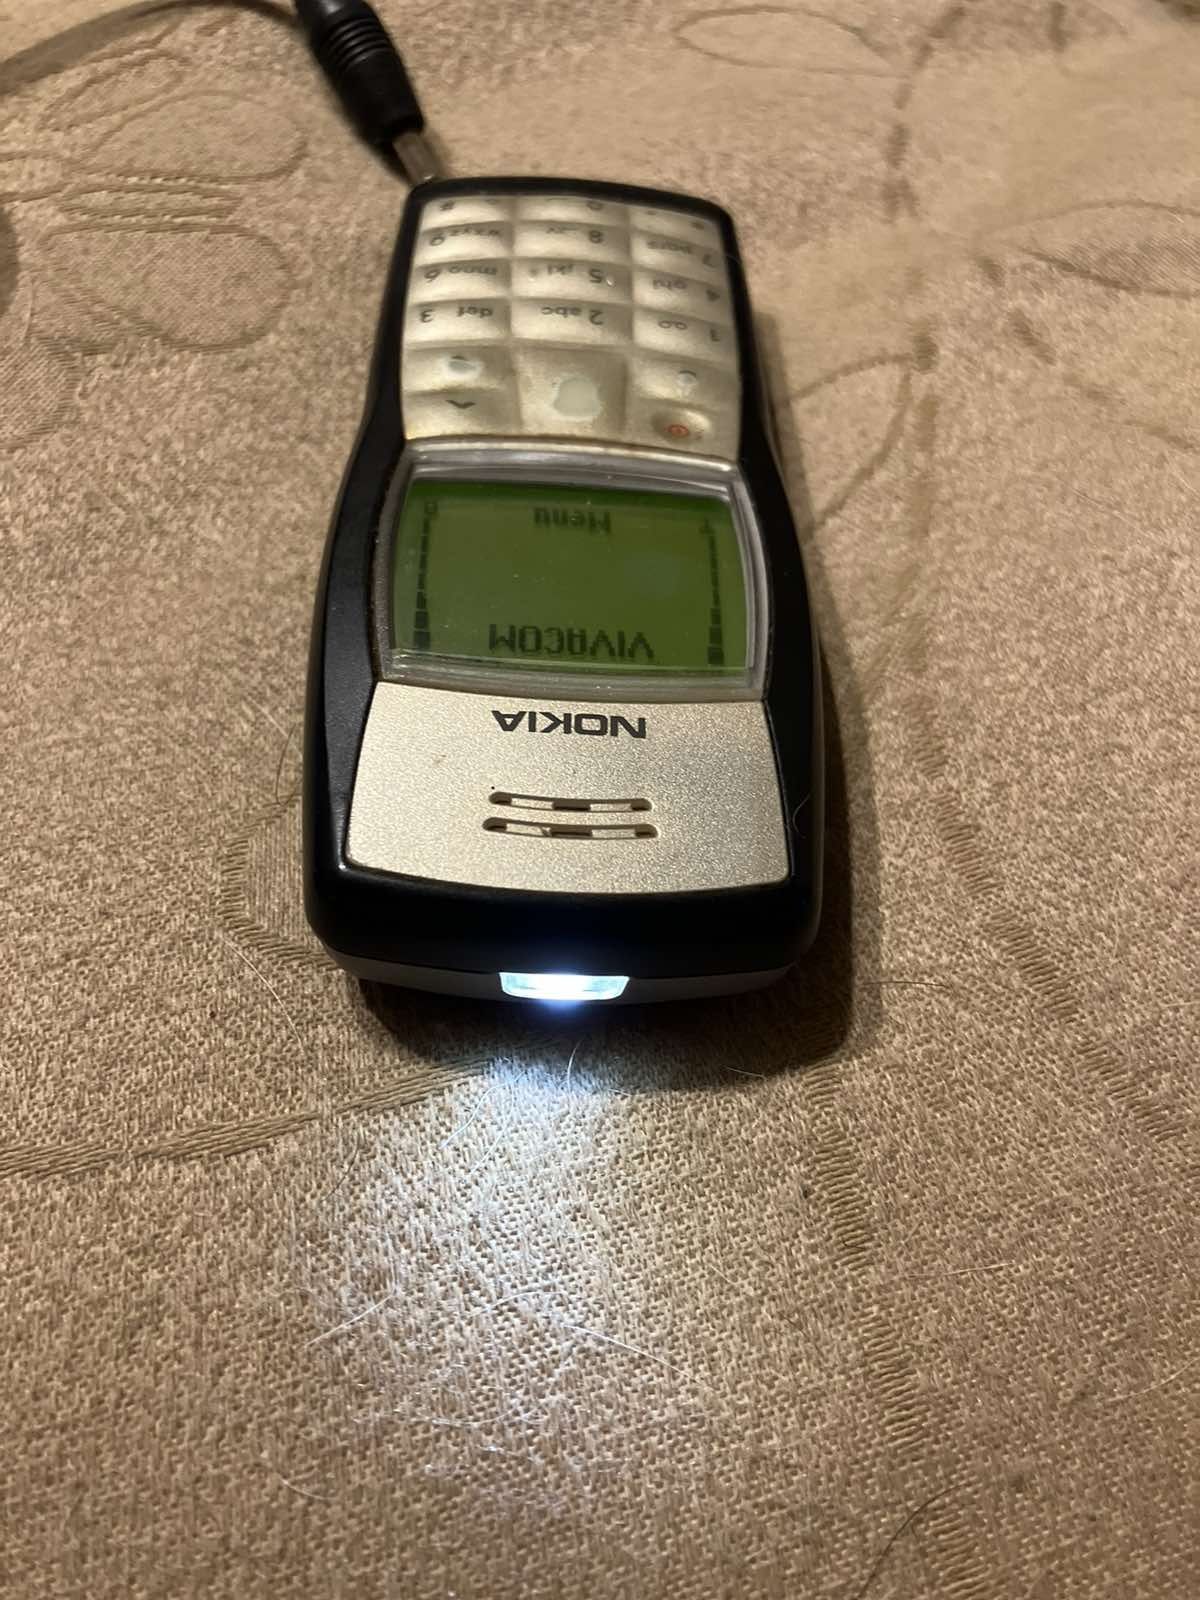 Телефон Nokia 1100 Germany